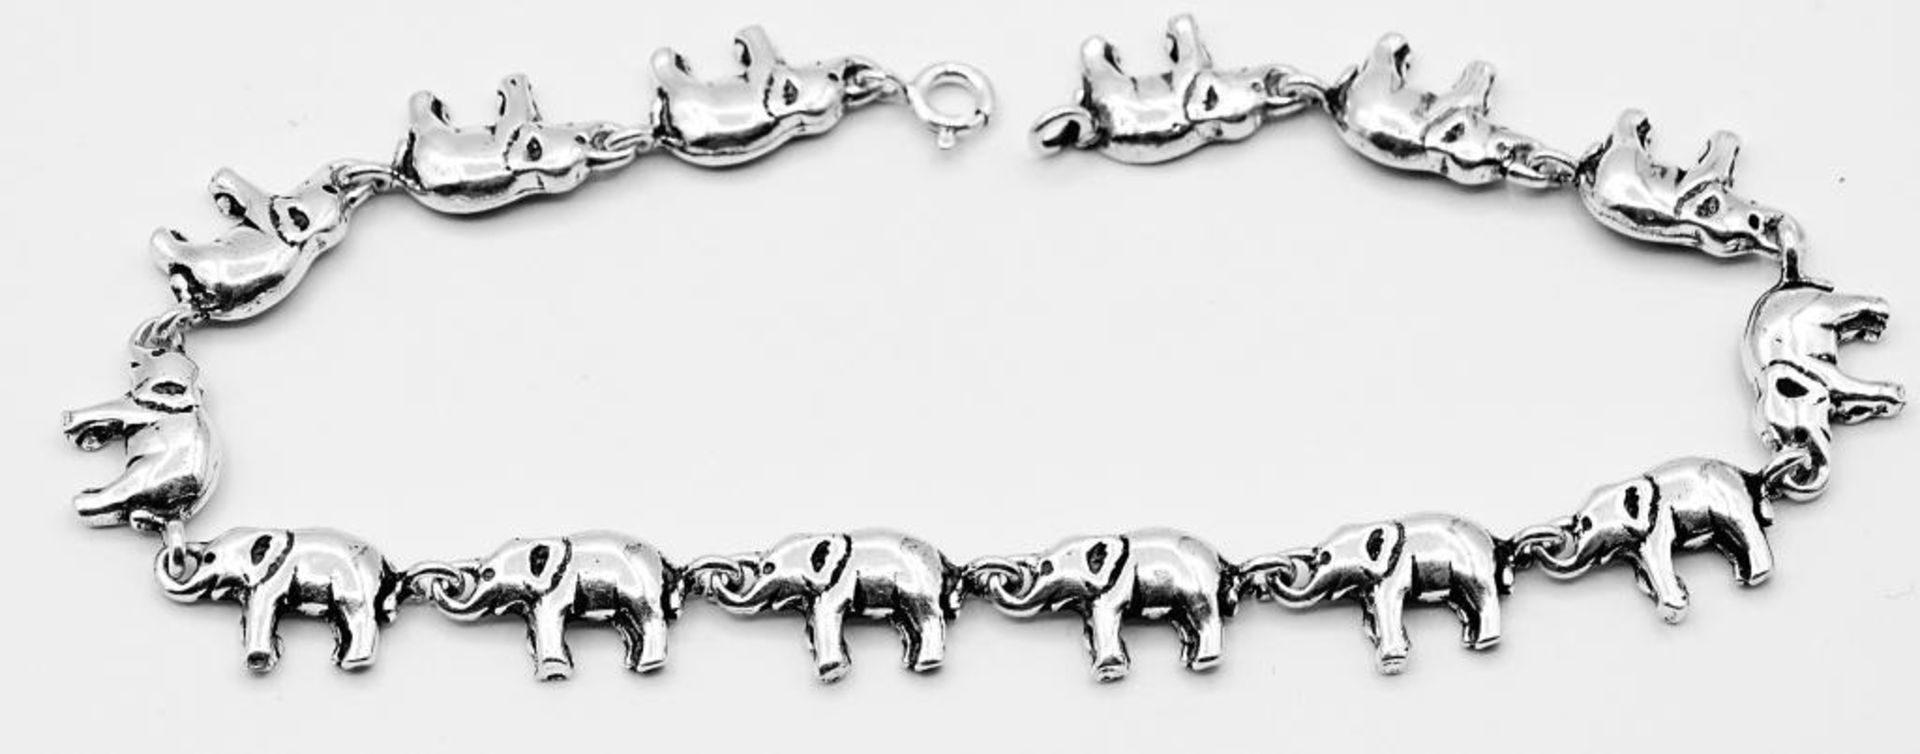 925er Silber Armband mit Elefanten,L- 24cm, 17,3gr.